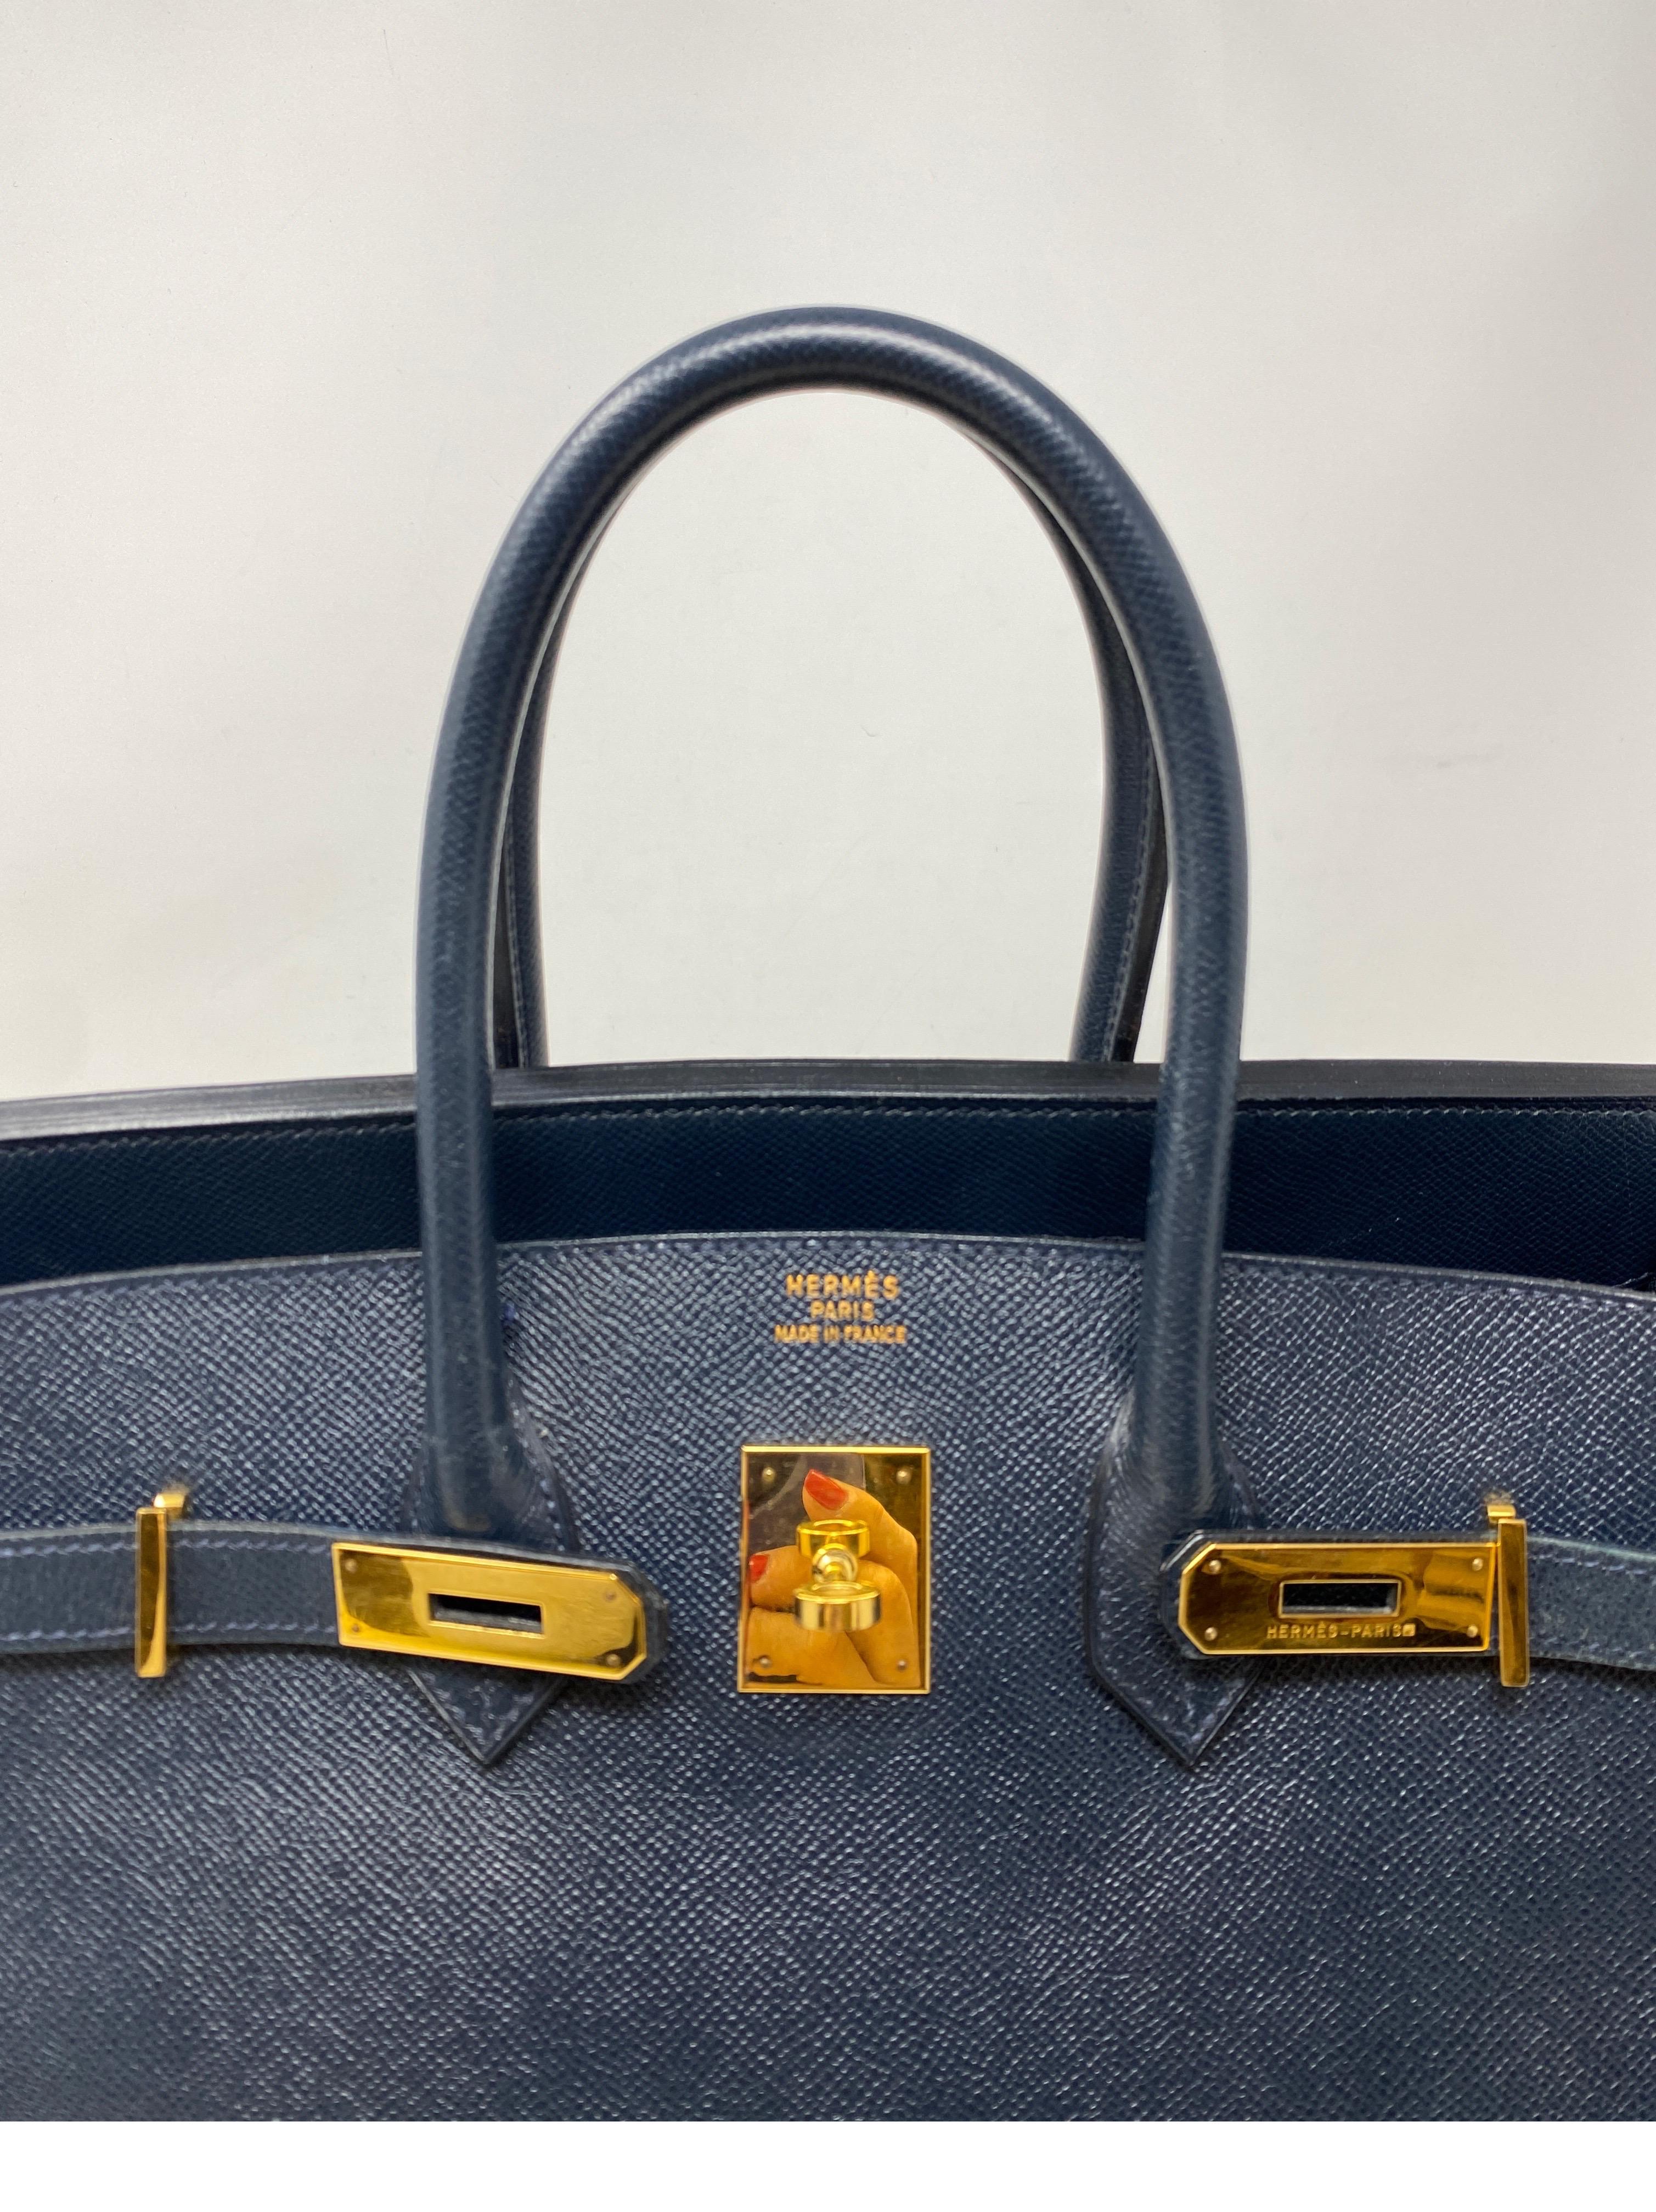 Women's or Men's Hermes Birkin Navy Bag 35